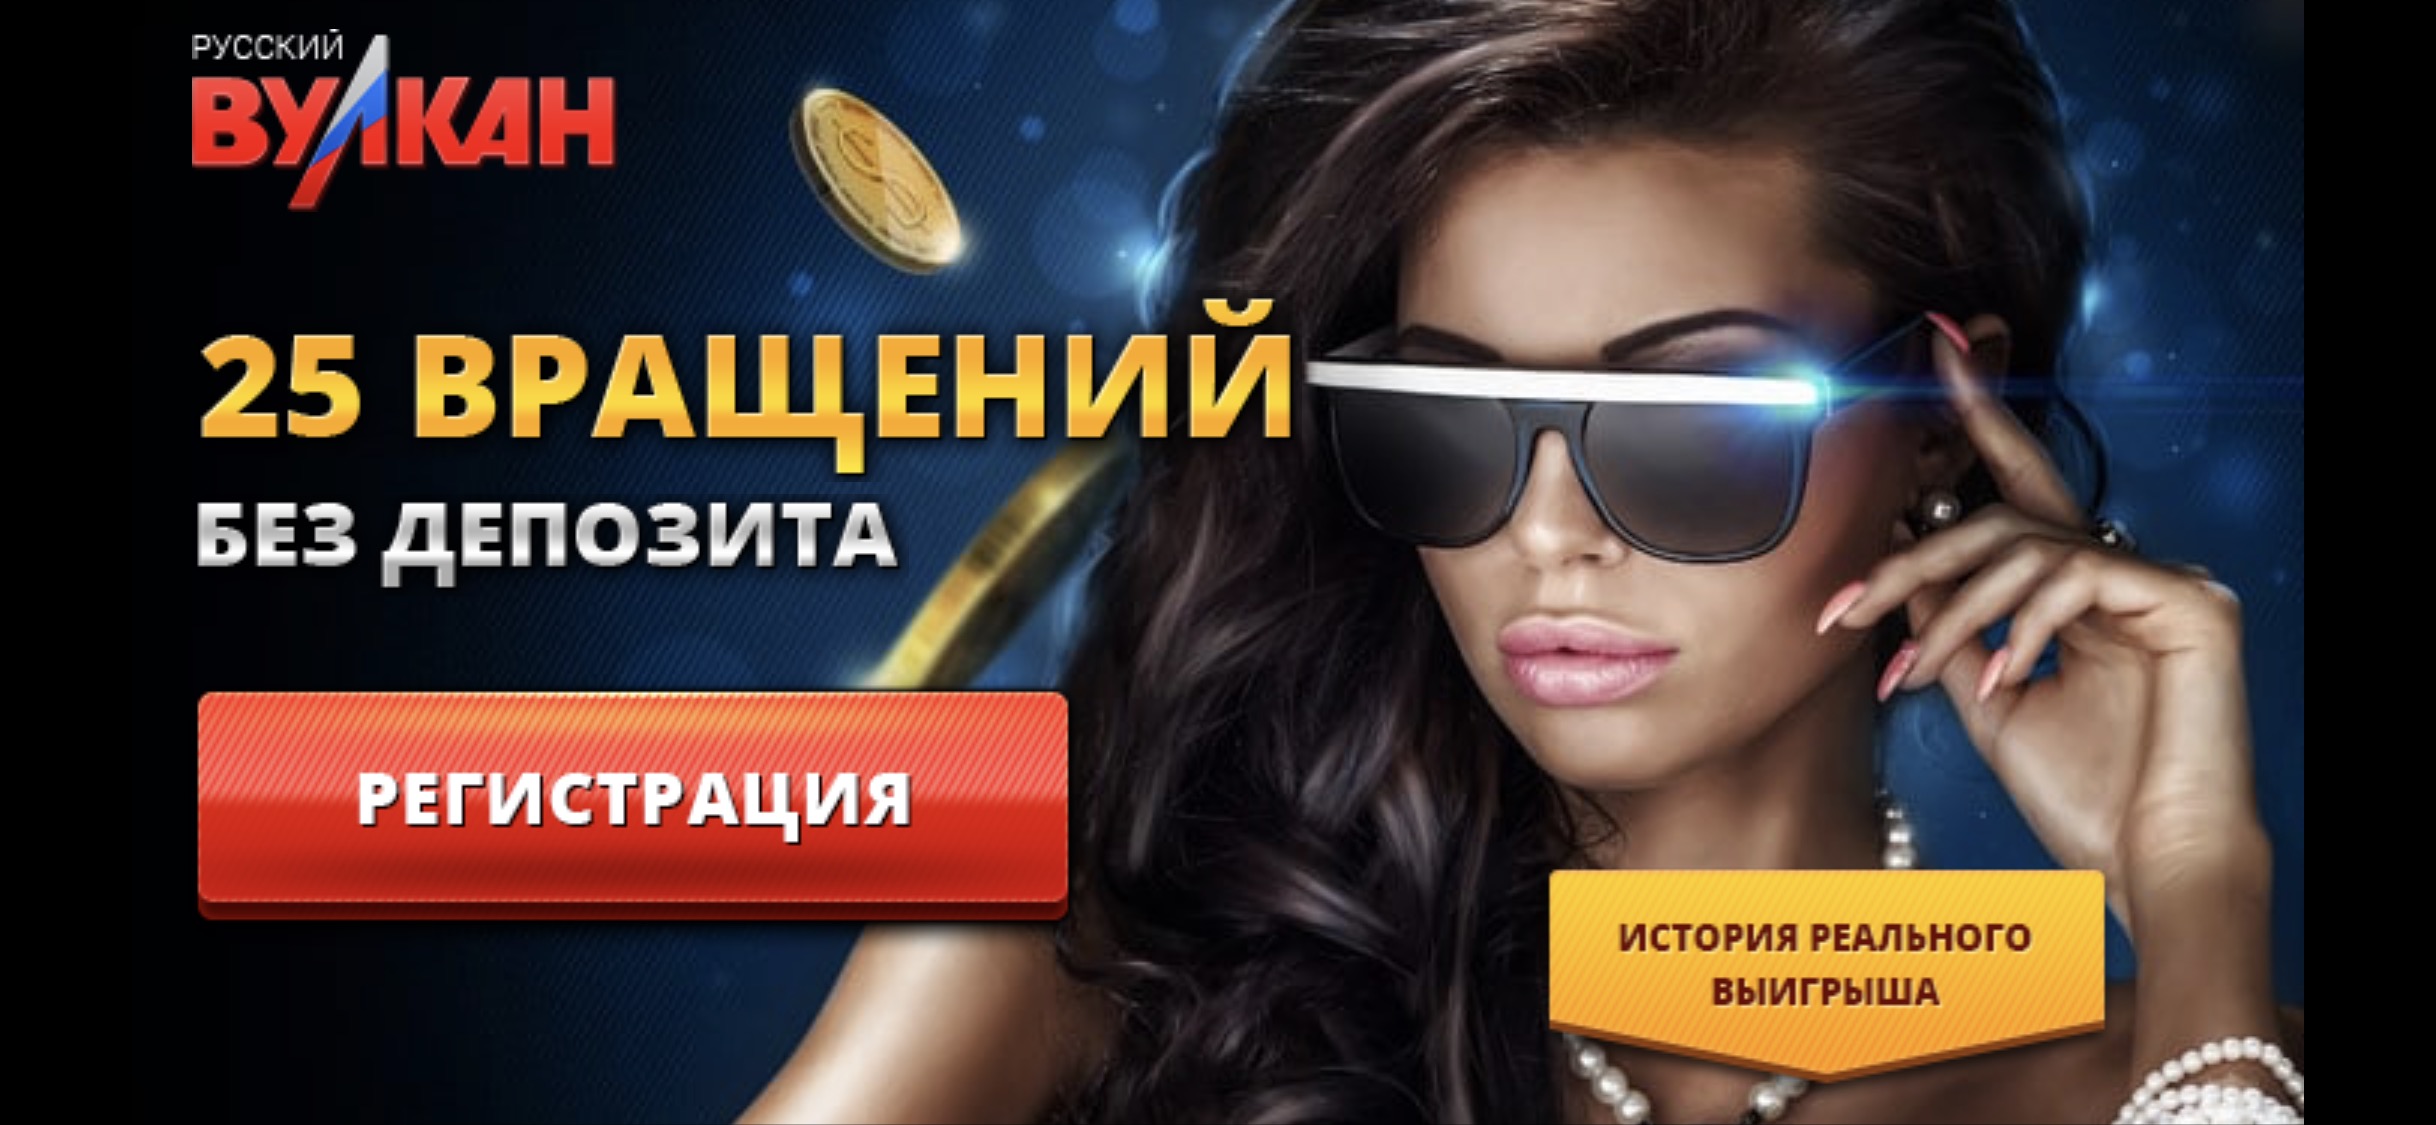 25 фриспинов за регистрацию в казино Русский Вулкан